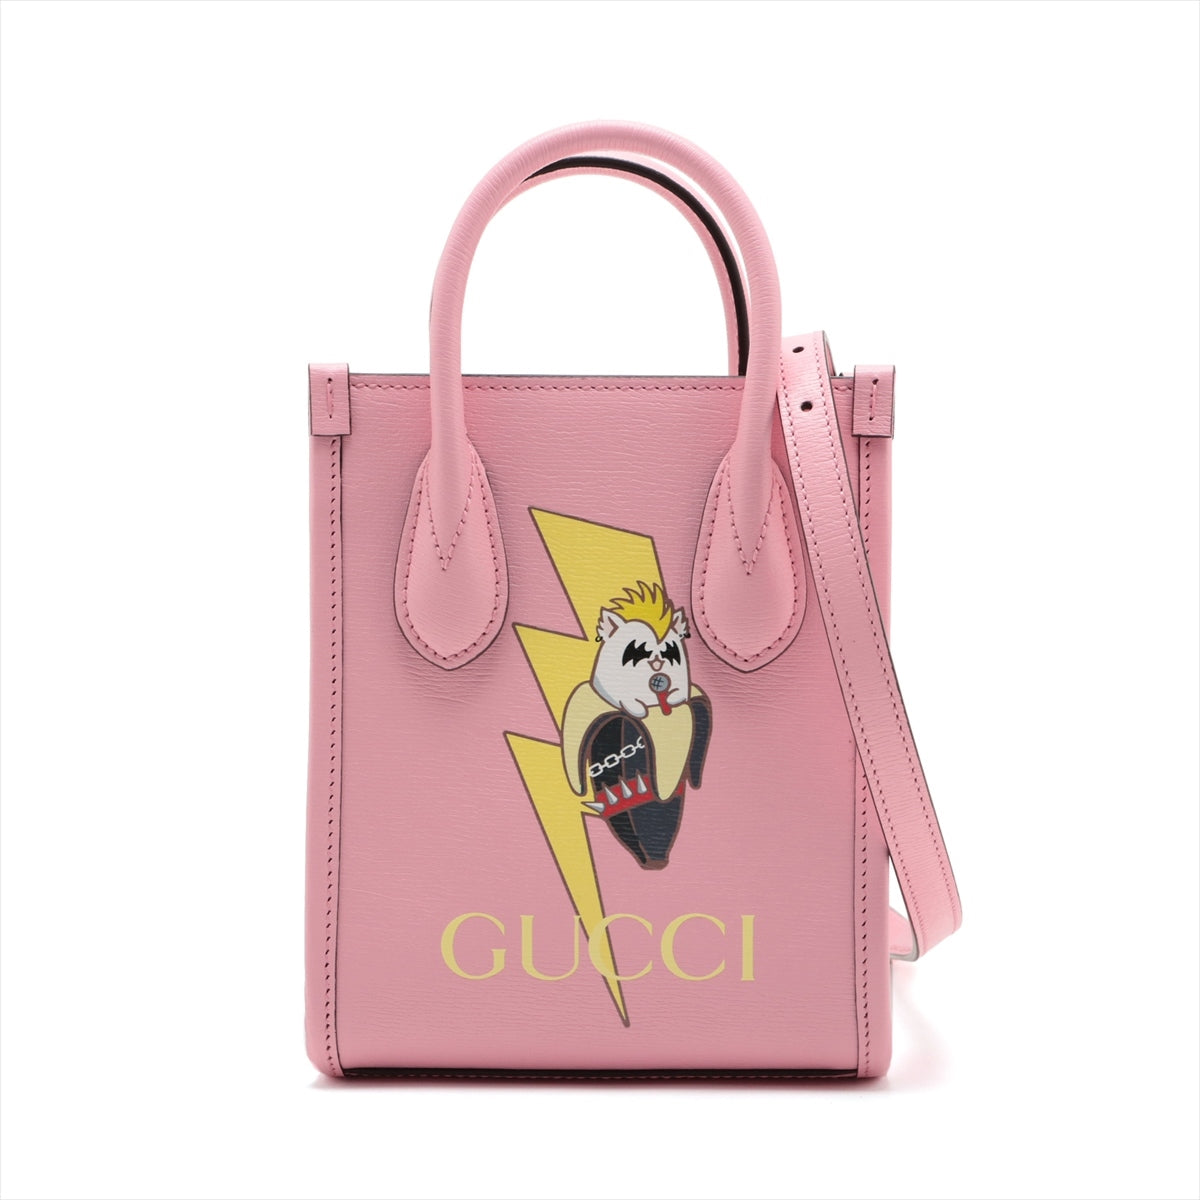 Gucci Leather 2 Way Handbag Pink 671623 Bananya collaboration